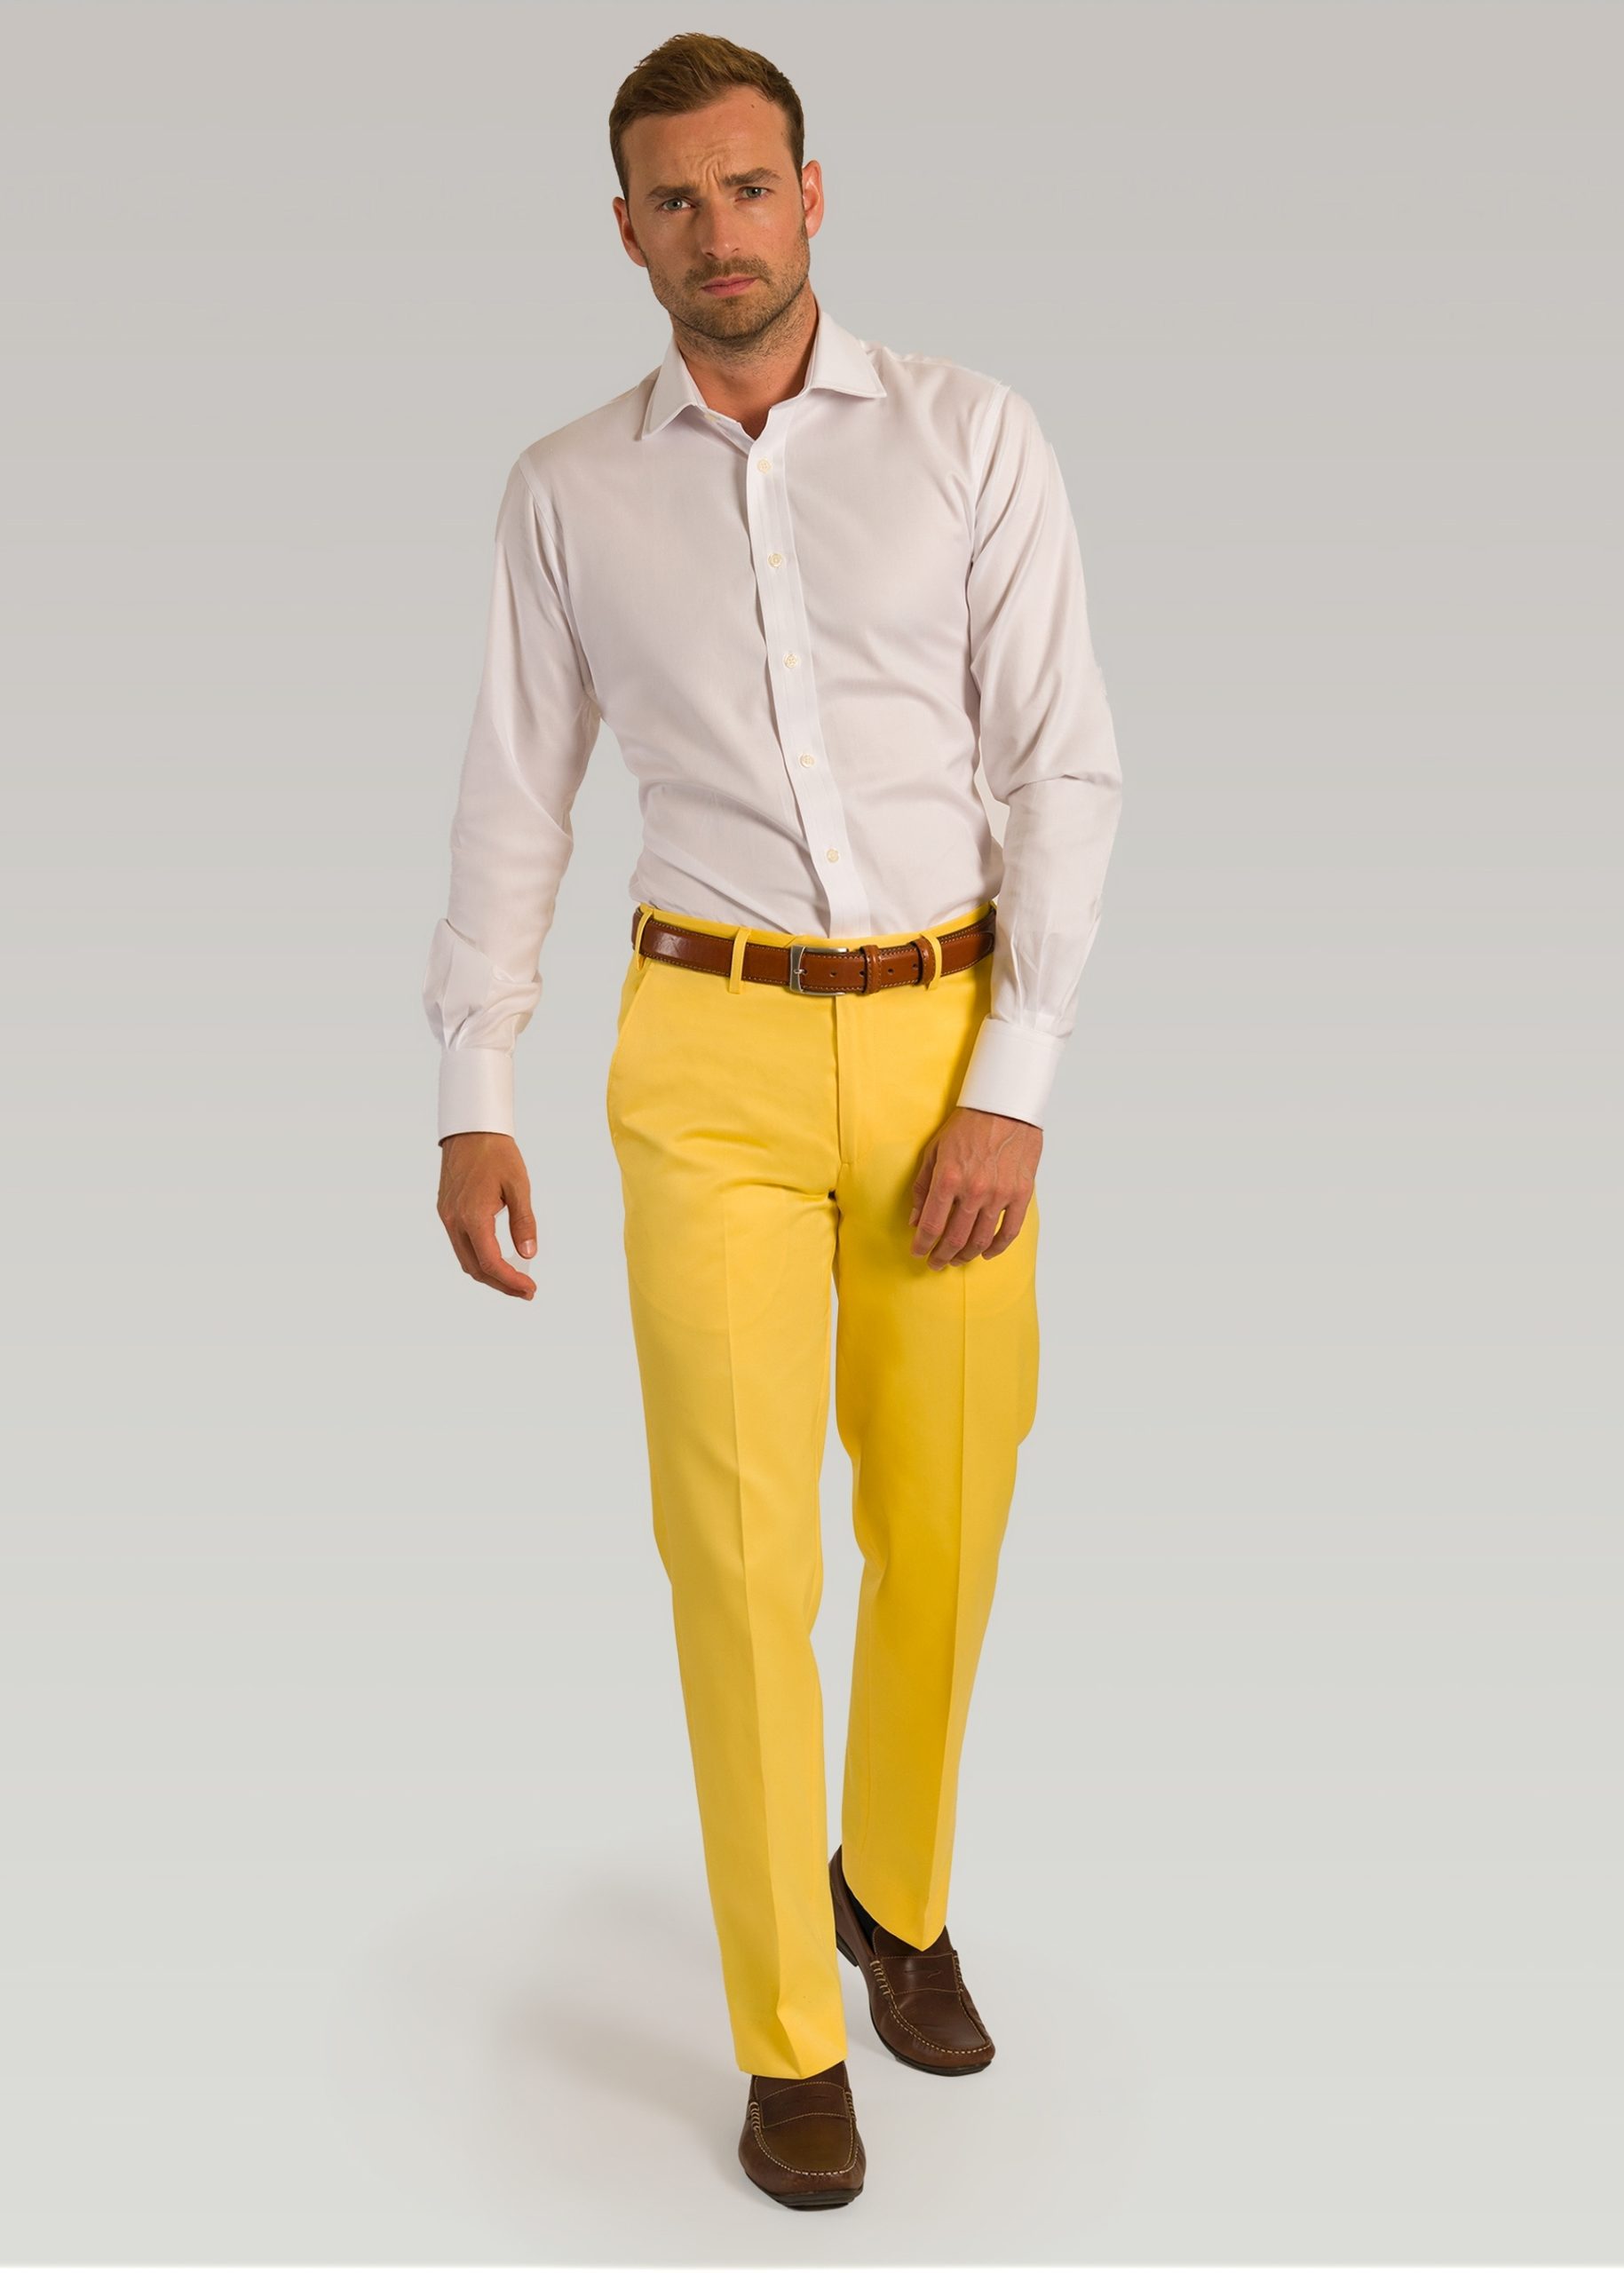 Lemon coloured cotton trousers